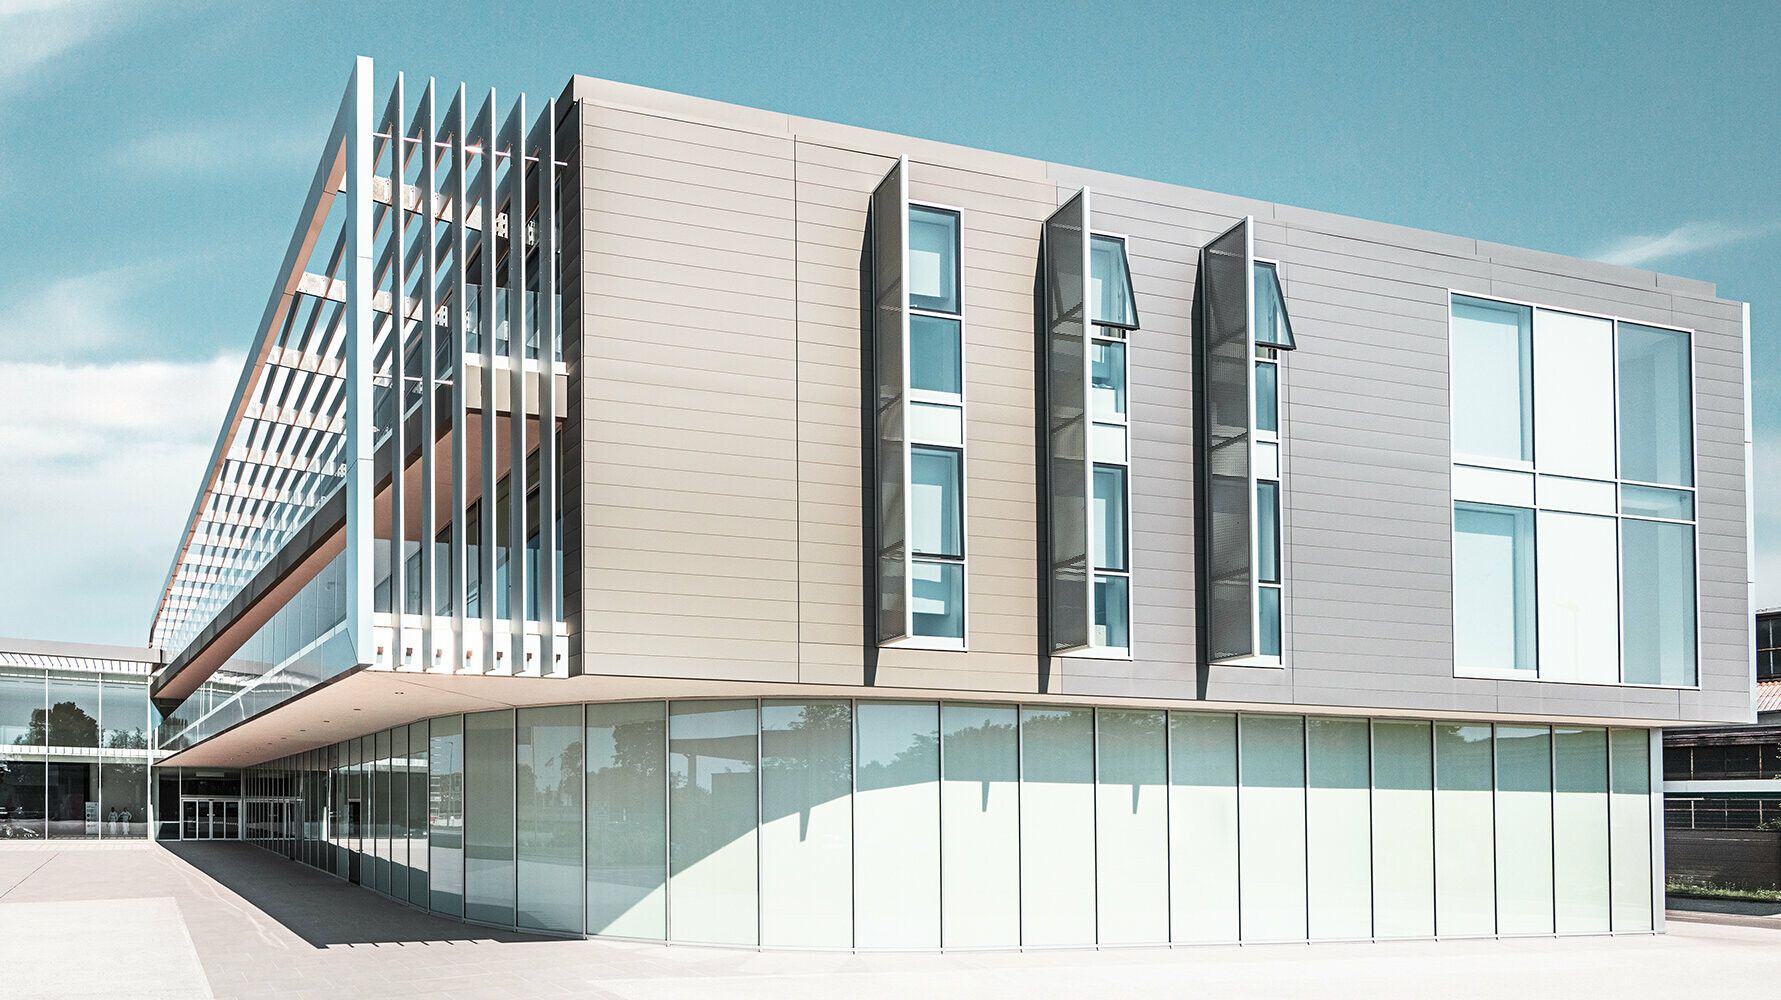 Forschungs- und Technologiezentrum mit moderner Sidings Fassade von PREFA in 5 verschiedenen Farbtönen